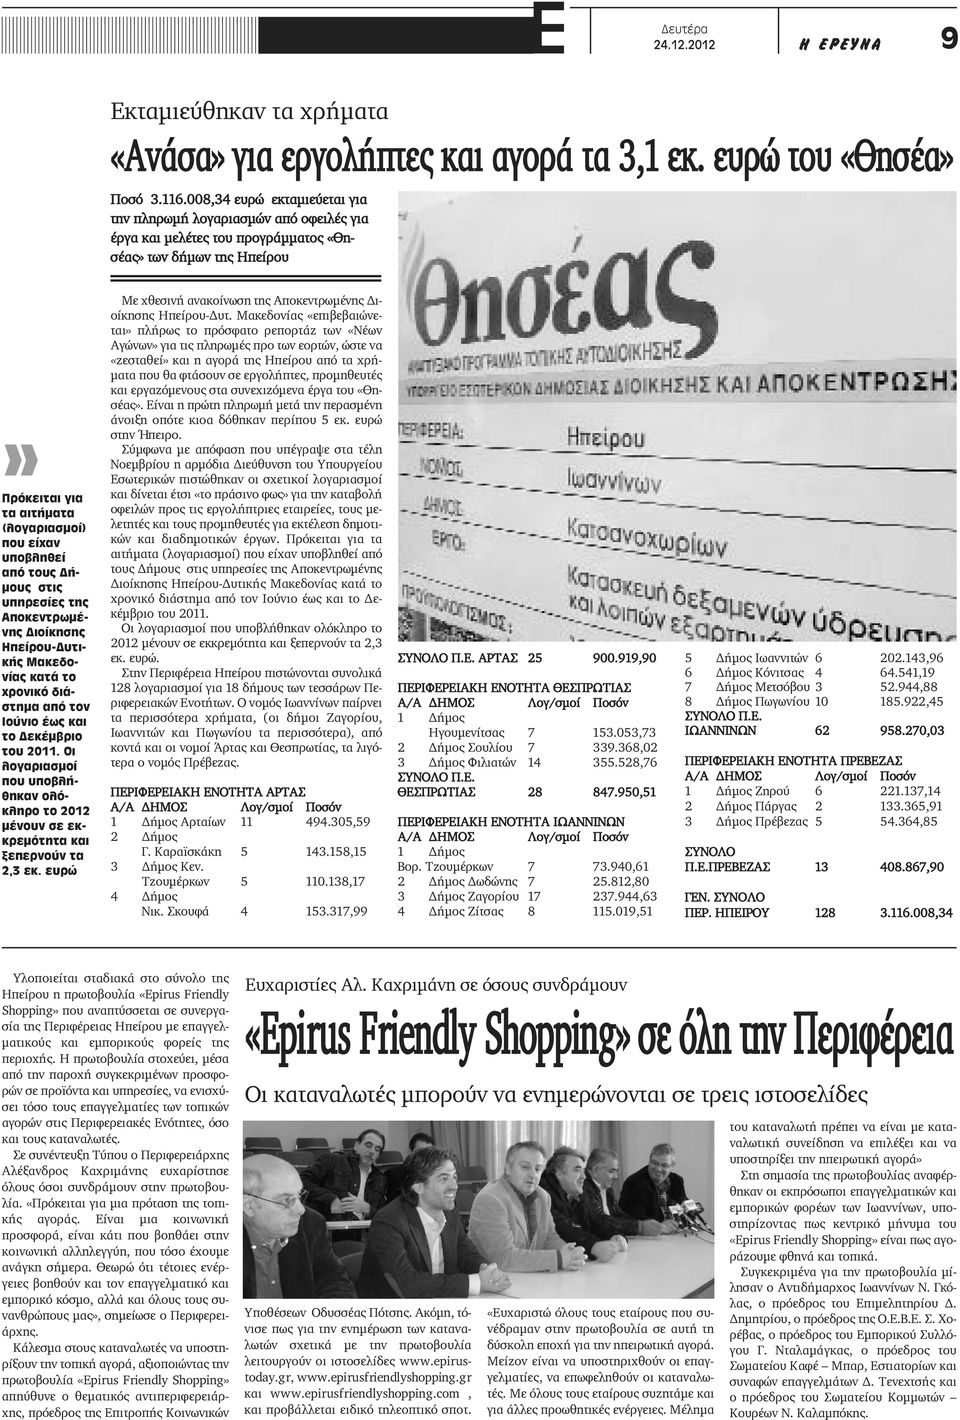 τους Δήμους στις υπηρεσίες της Αποκεντρωμένης Διοίκησης Ηπείρου-Δυτικής Μακεδονίας κατά το χρονικό διάστημα από τον Ιούνιο έως και το Δεκέμβριο του 2011.